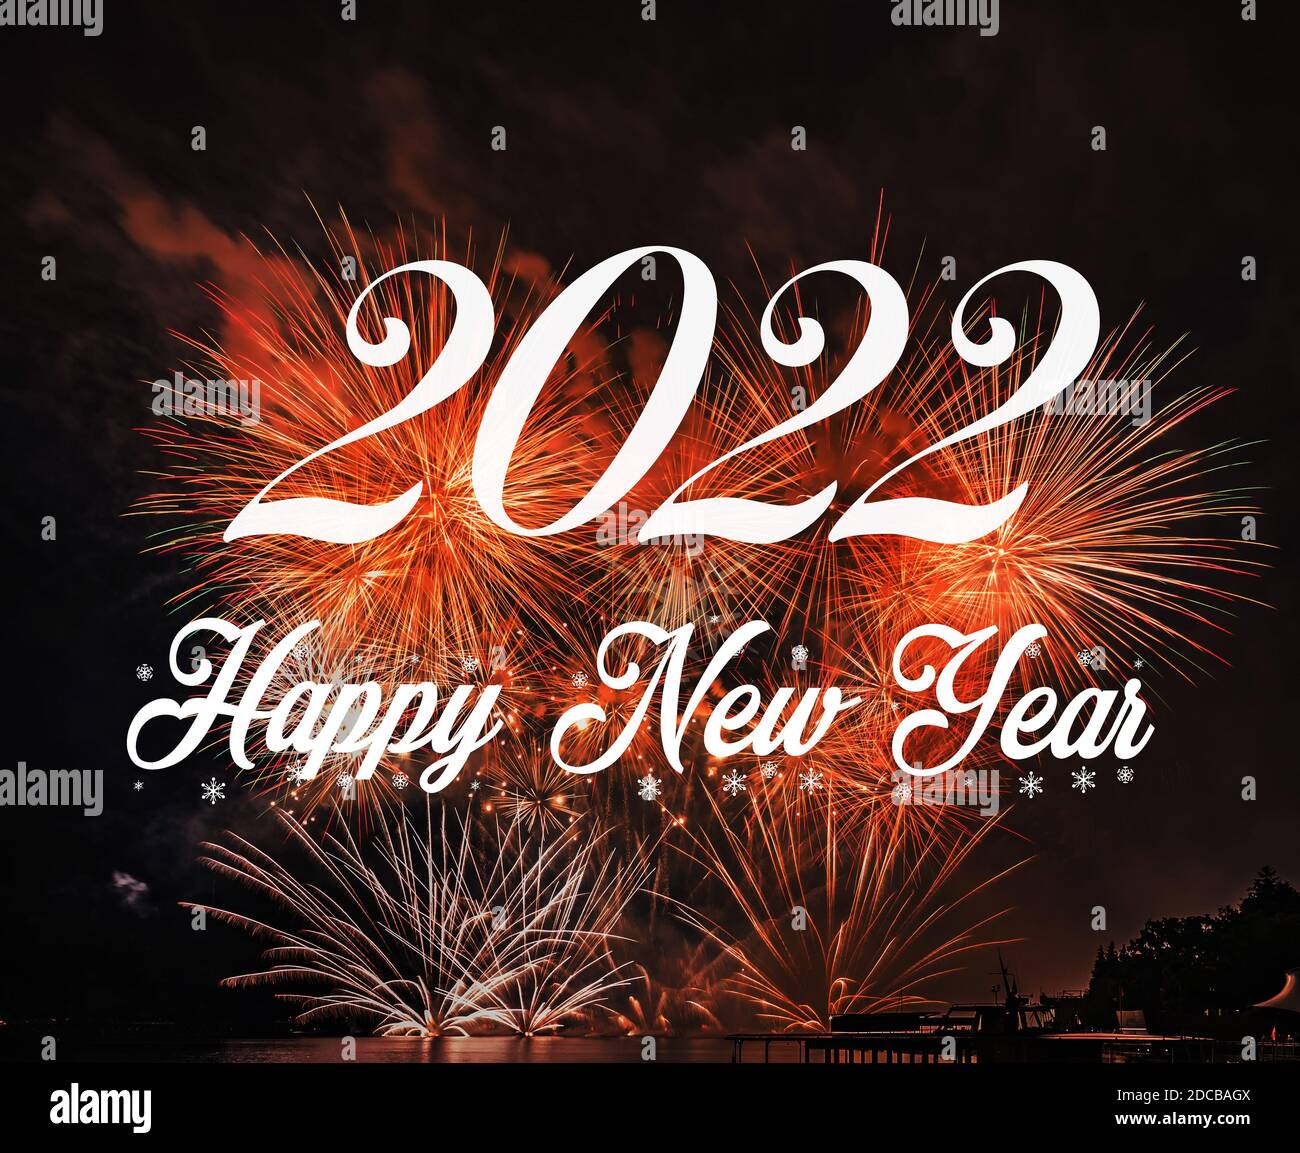 Felice anno nuovo 2022 con sfondo di fuochi d'artificio. Celebrazione Nuovo Anno 2022 Foto Stock